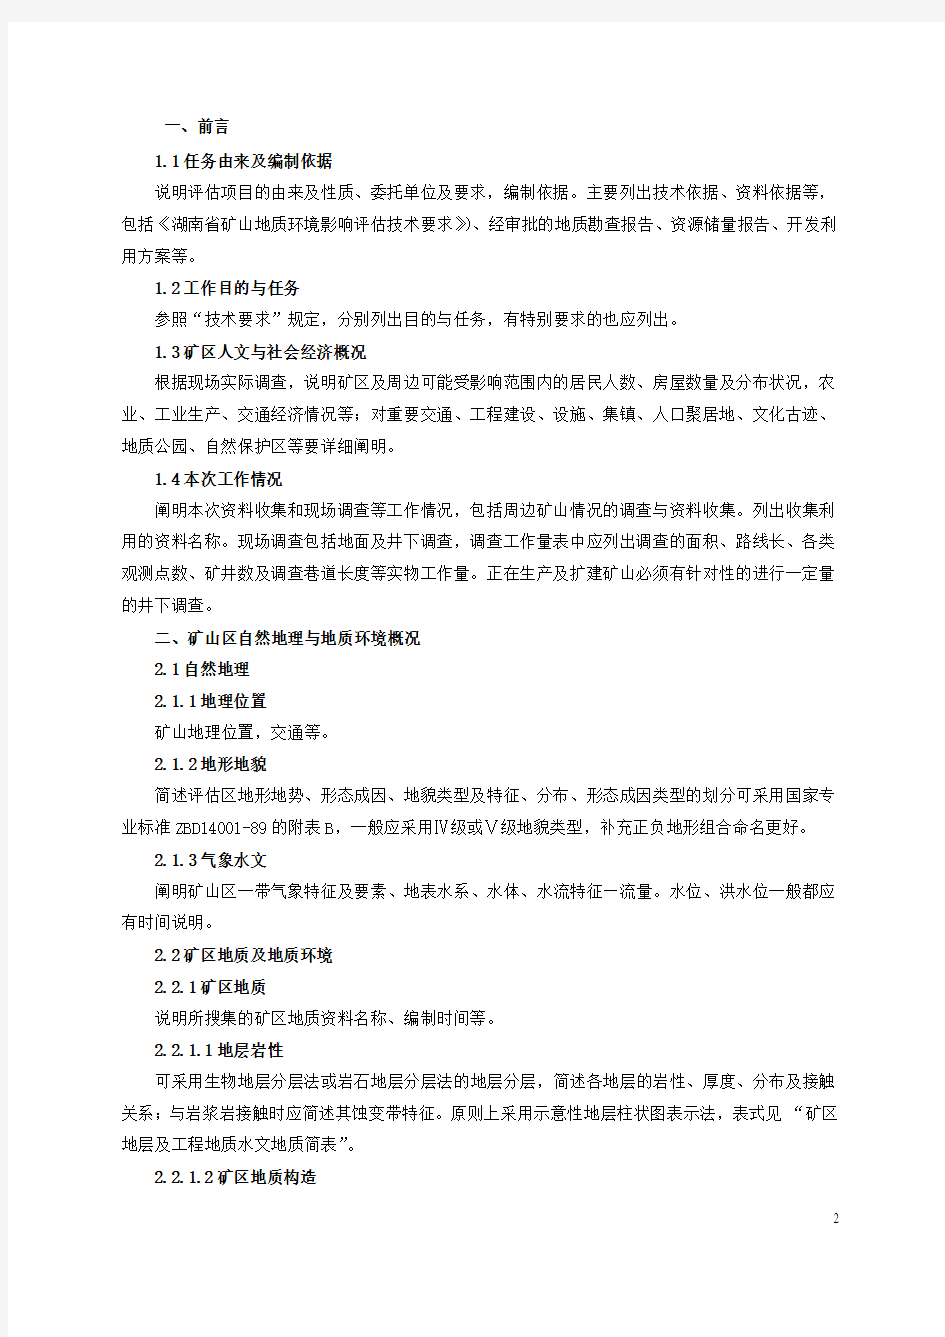 湖南省矿山地质环境影响评估指南